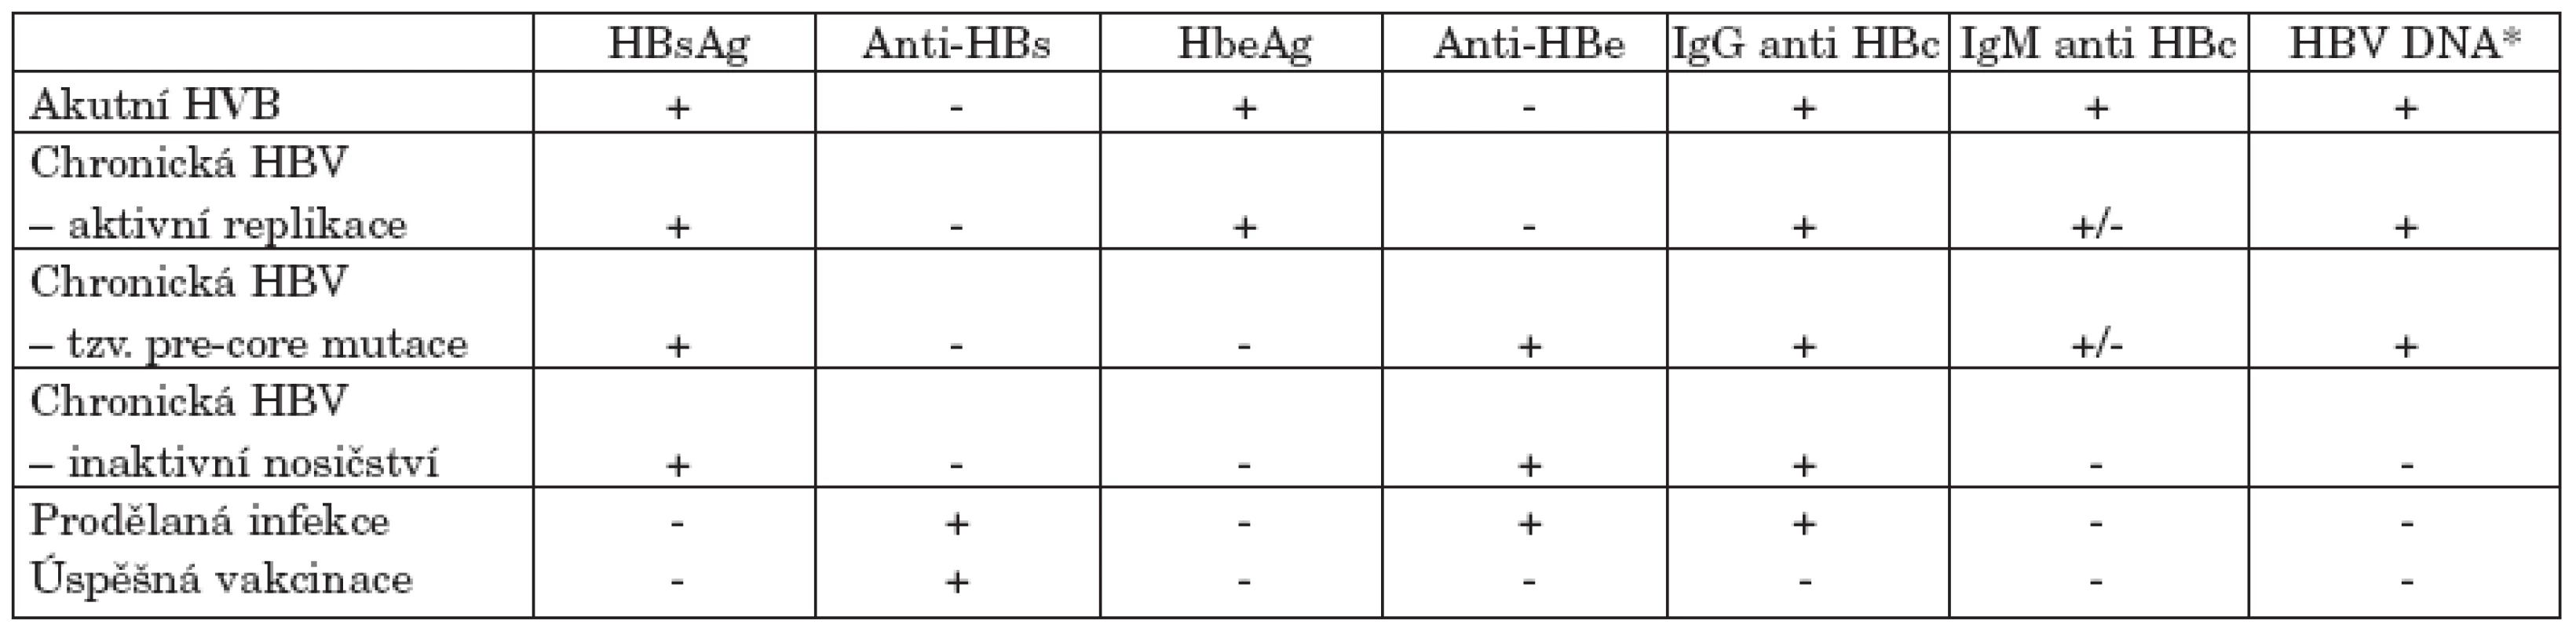 Typické sérologické a molekulárně genetické nálezy jednotlivých stadií přirozeného vývoje infekce HBV.